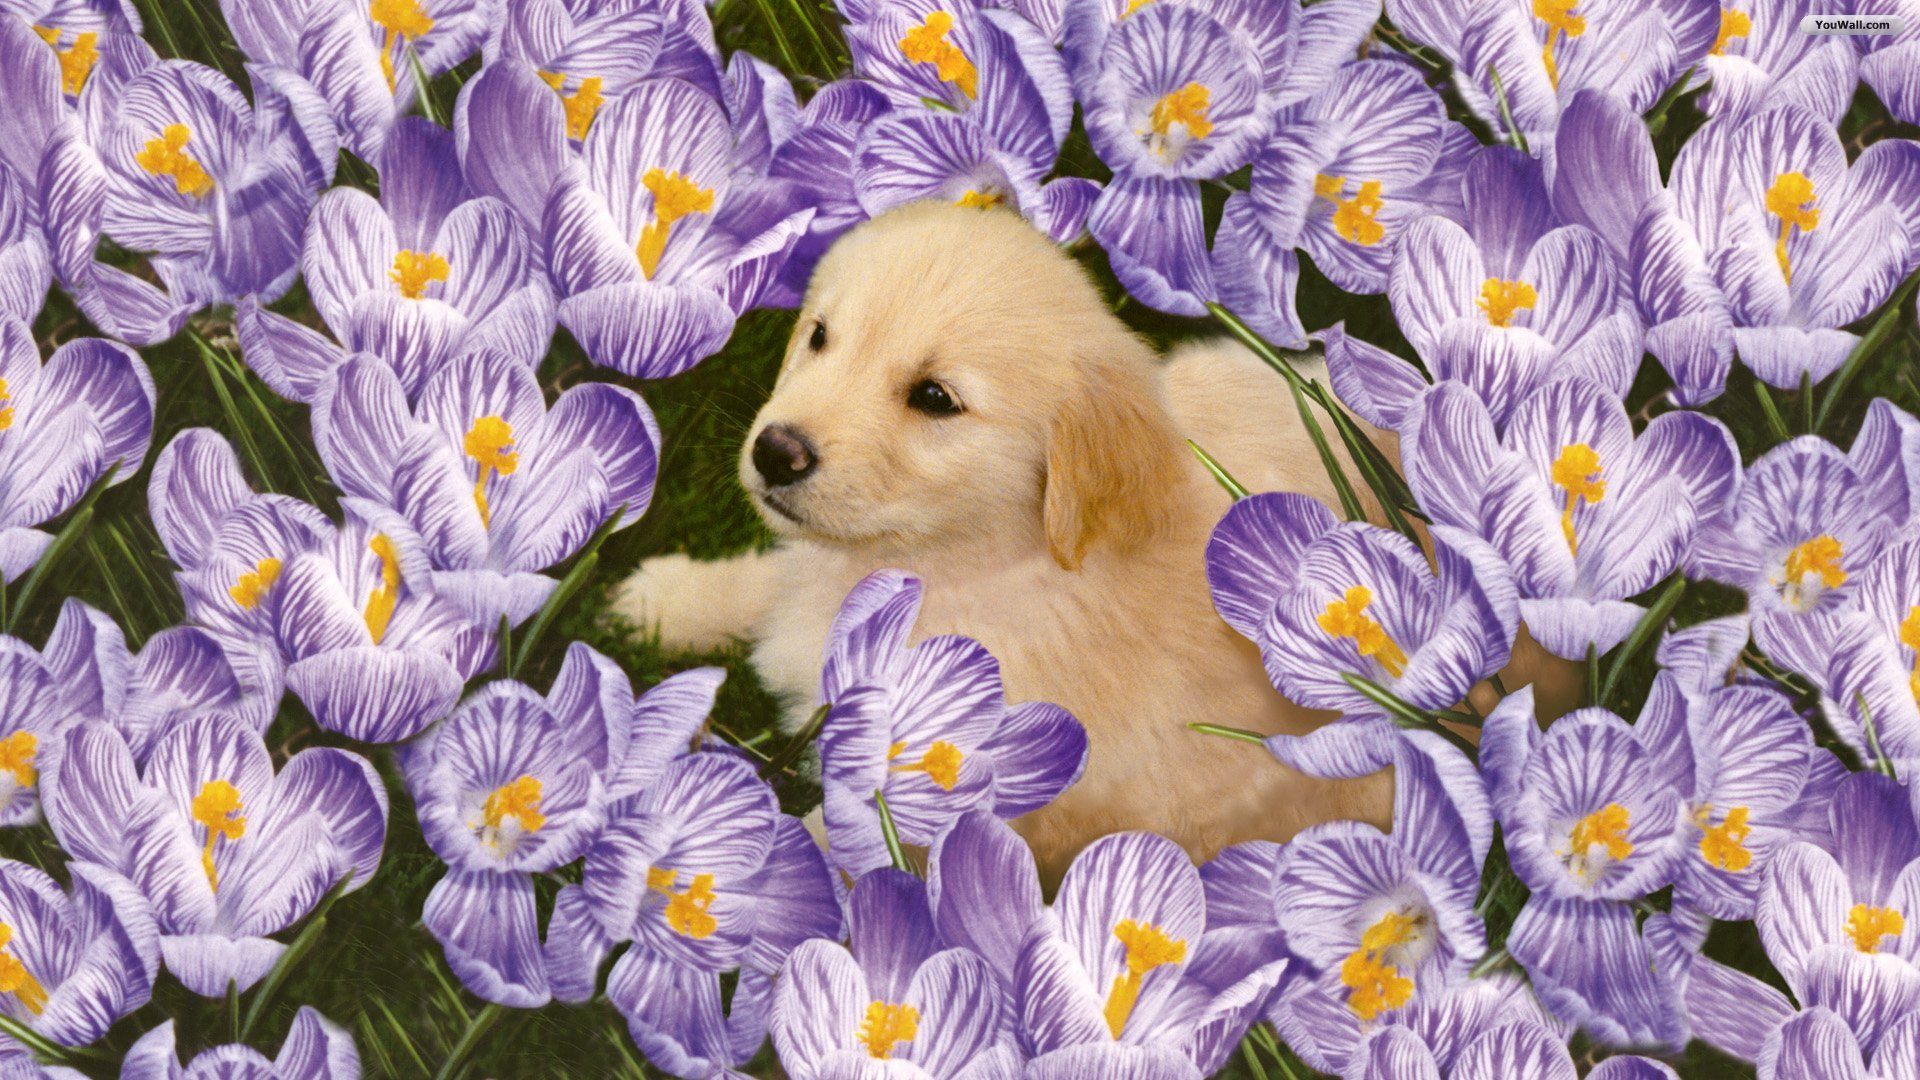 Puppies in Flowers Computer Wallpaper